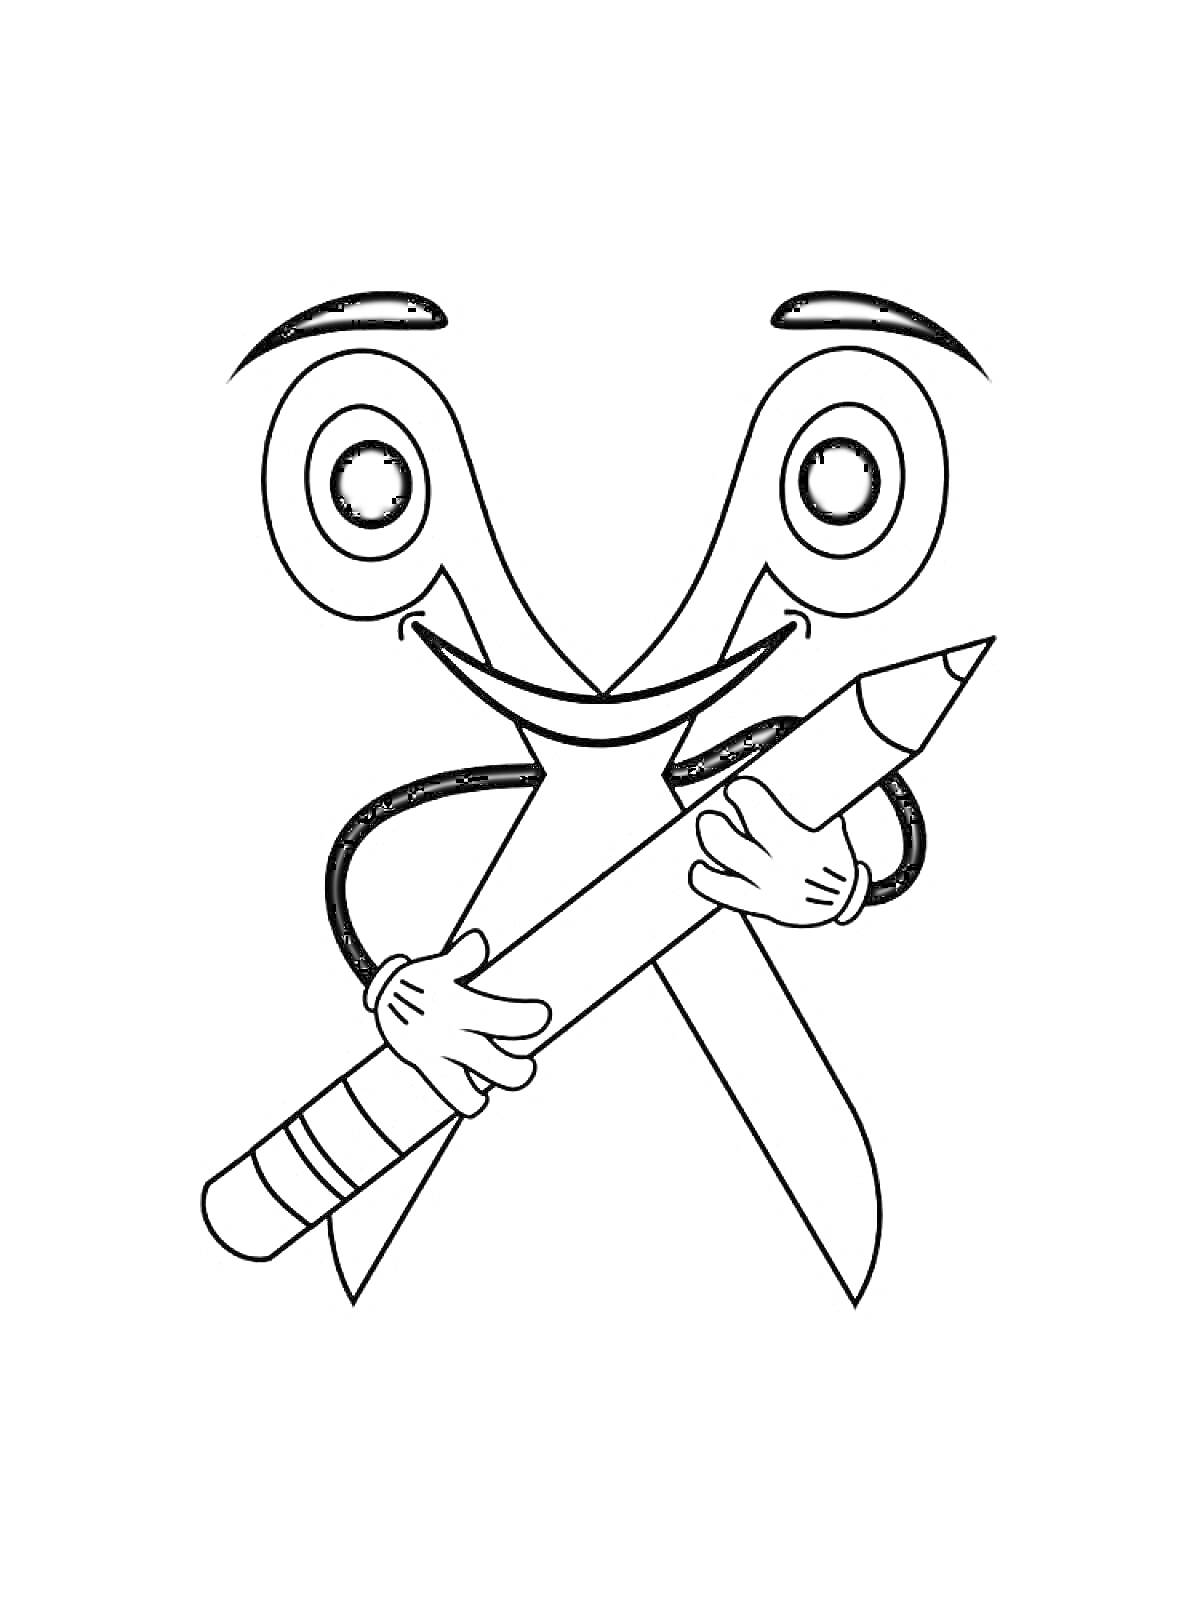 Раскраска Ножницы с лицом и руками, держащие карандаш